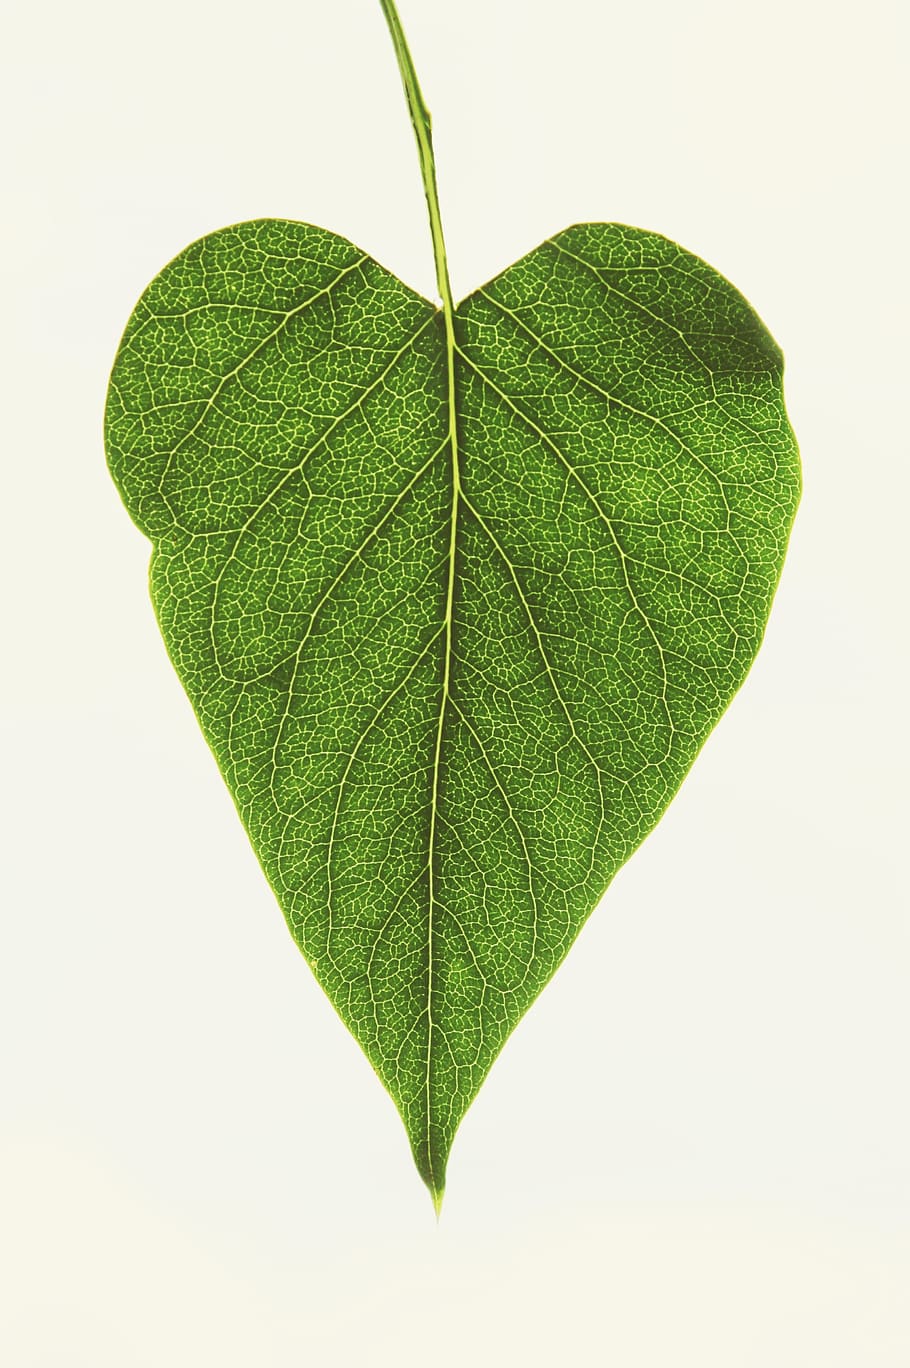 leaf, heart, love, nature, plant, garden, veins, green, shine through, symbol